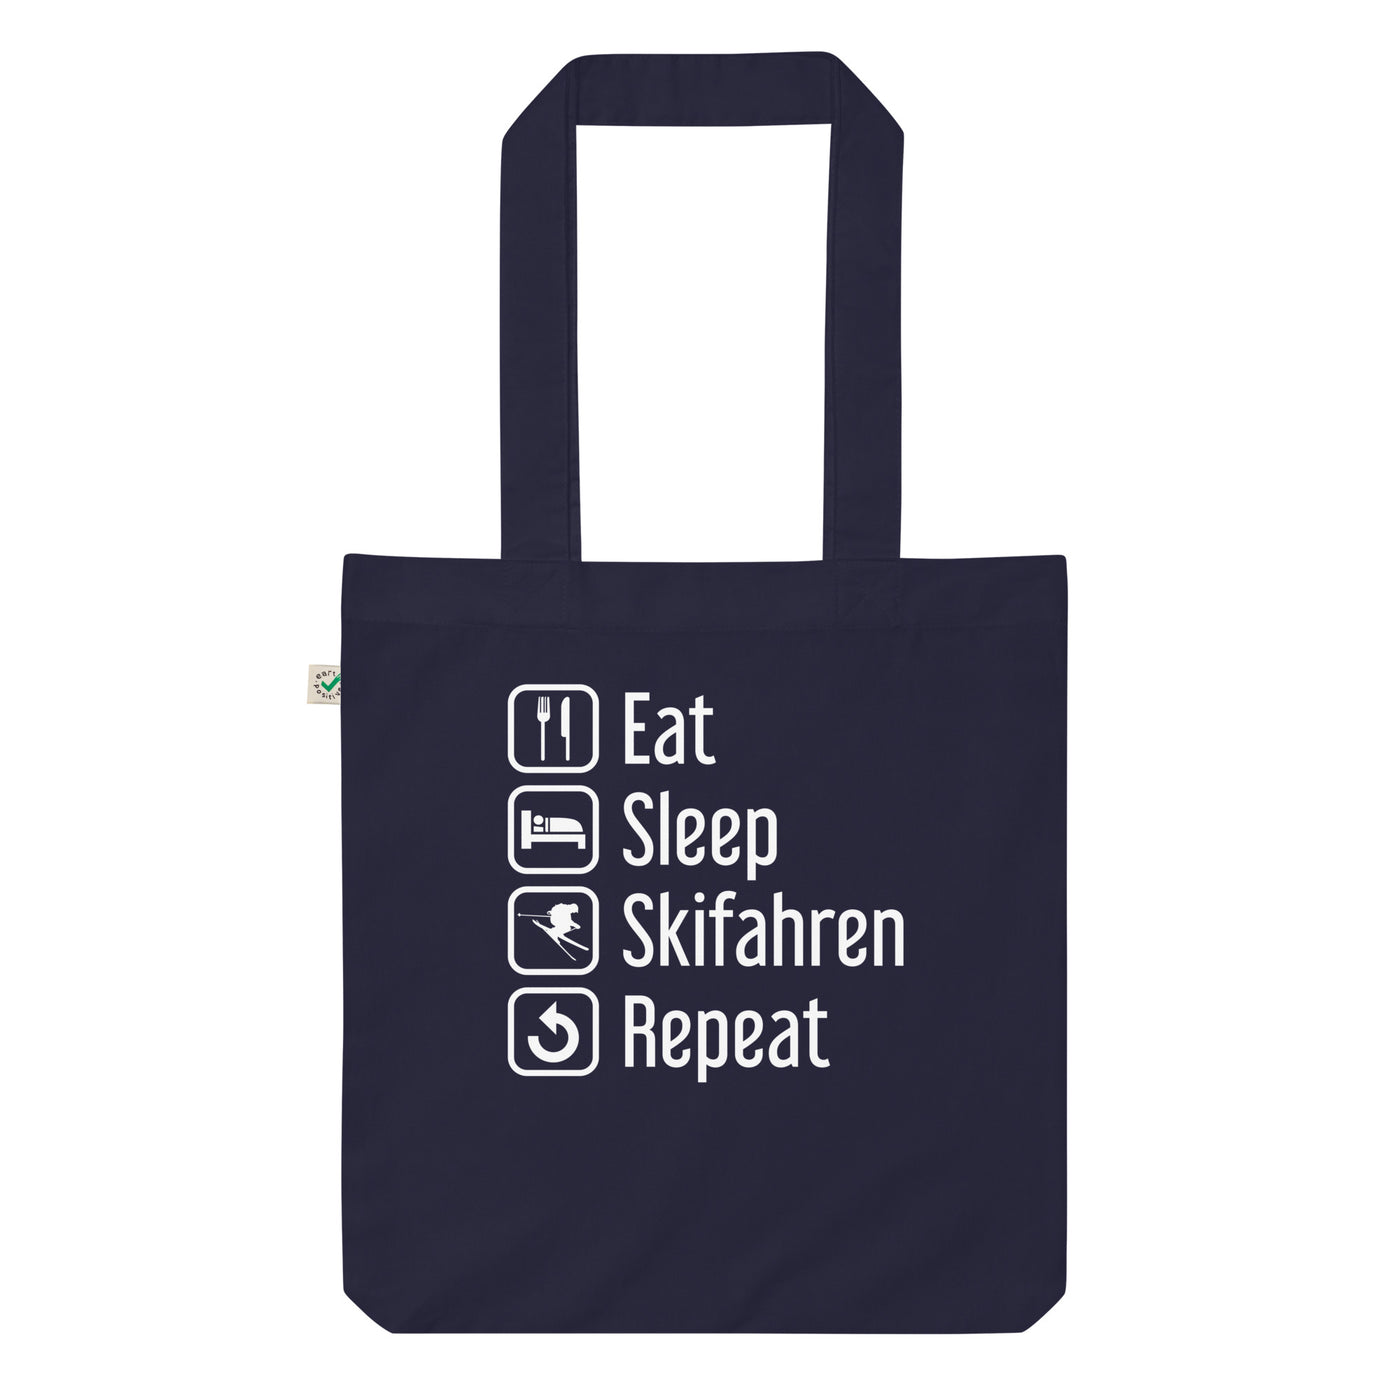 Eat Sleep Skifahren Repeat - Organic Einkaufstasche klettern ski